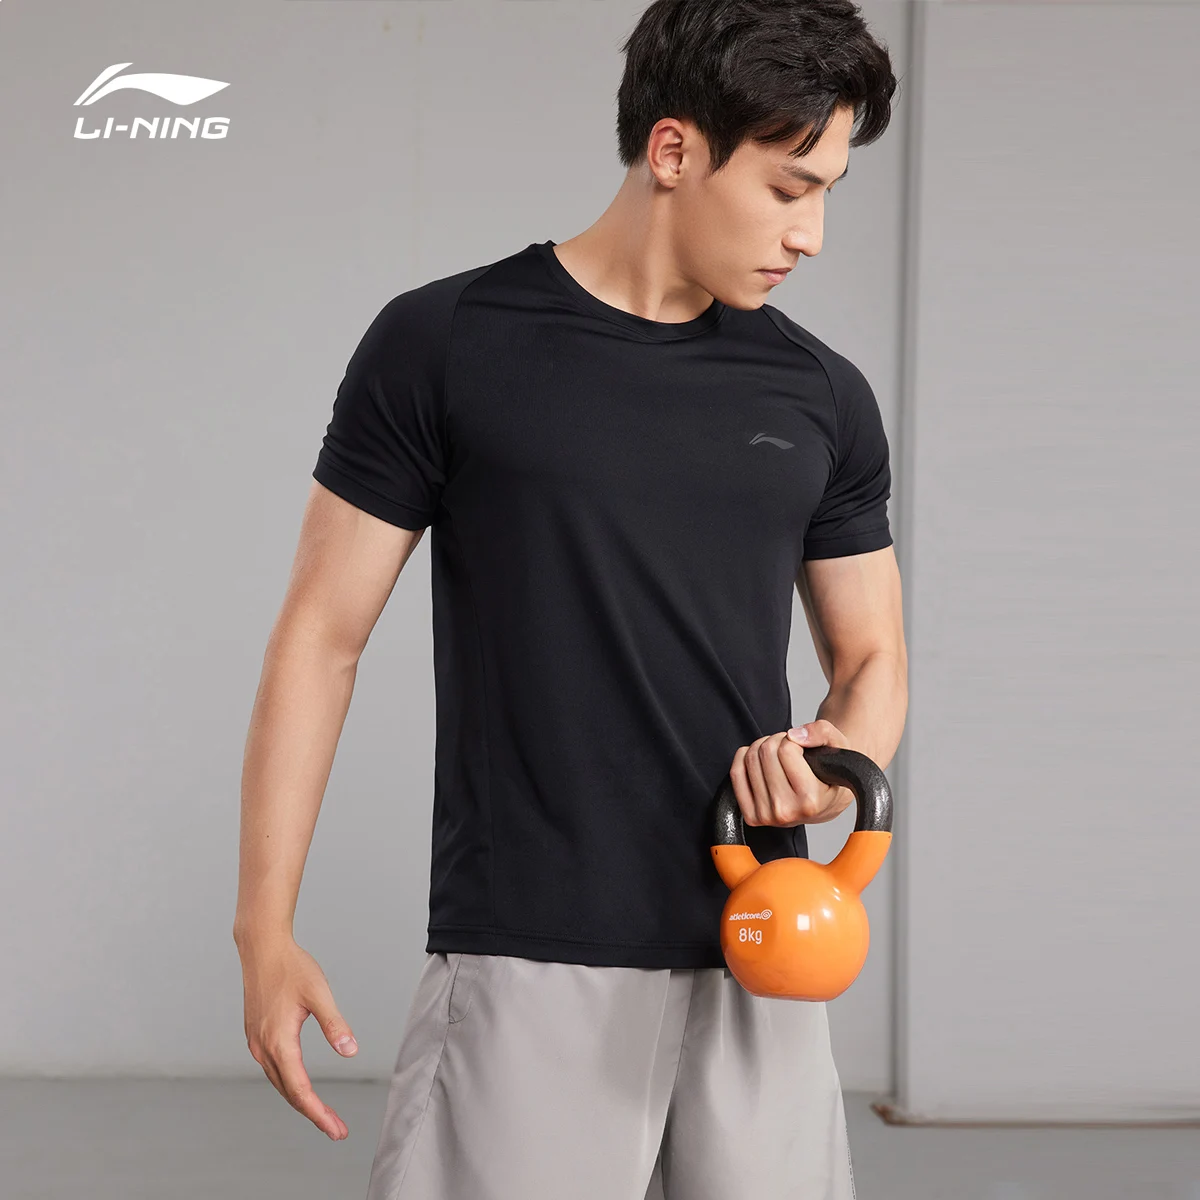 

Мужская быстросохнущая футболка Li Ning, шелковая воздухопроницаемая футболка с коротким рукавом, круглым вырезом, для бега и тренировок, лето